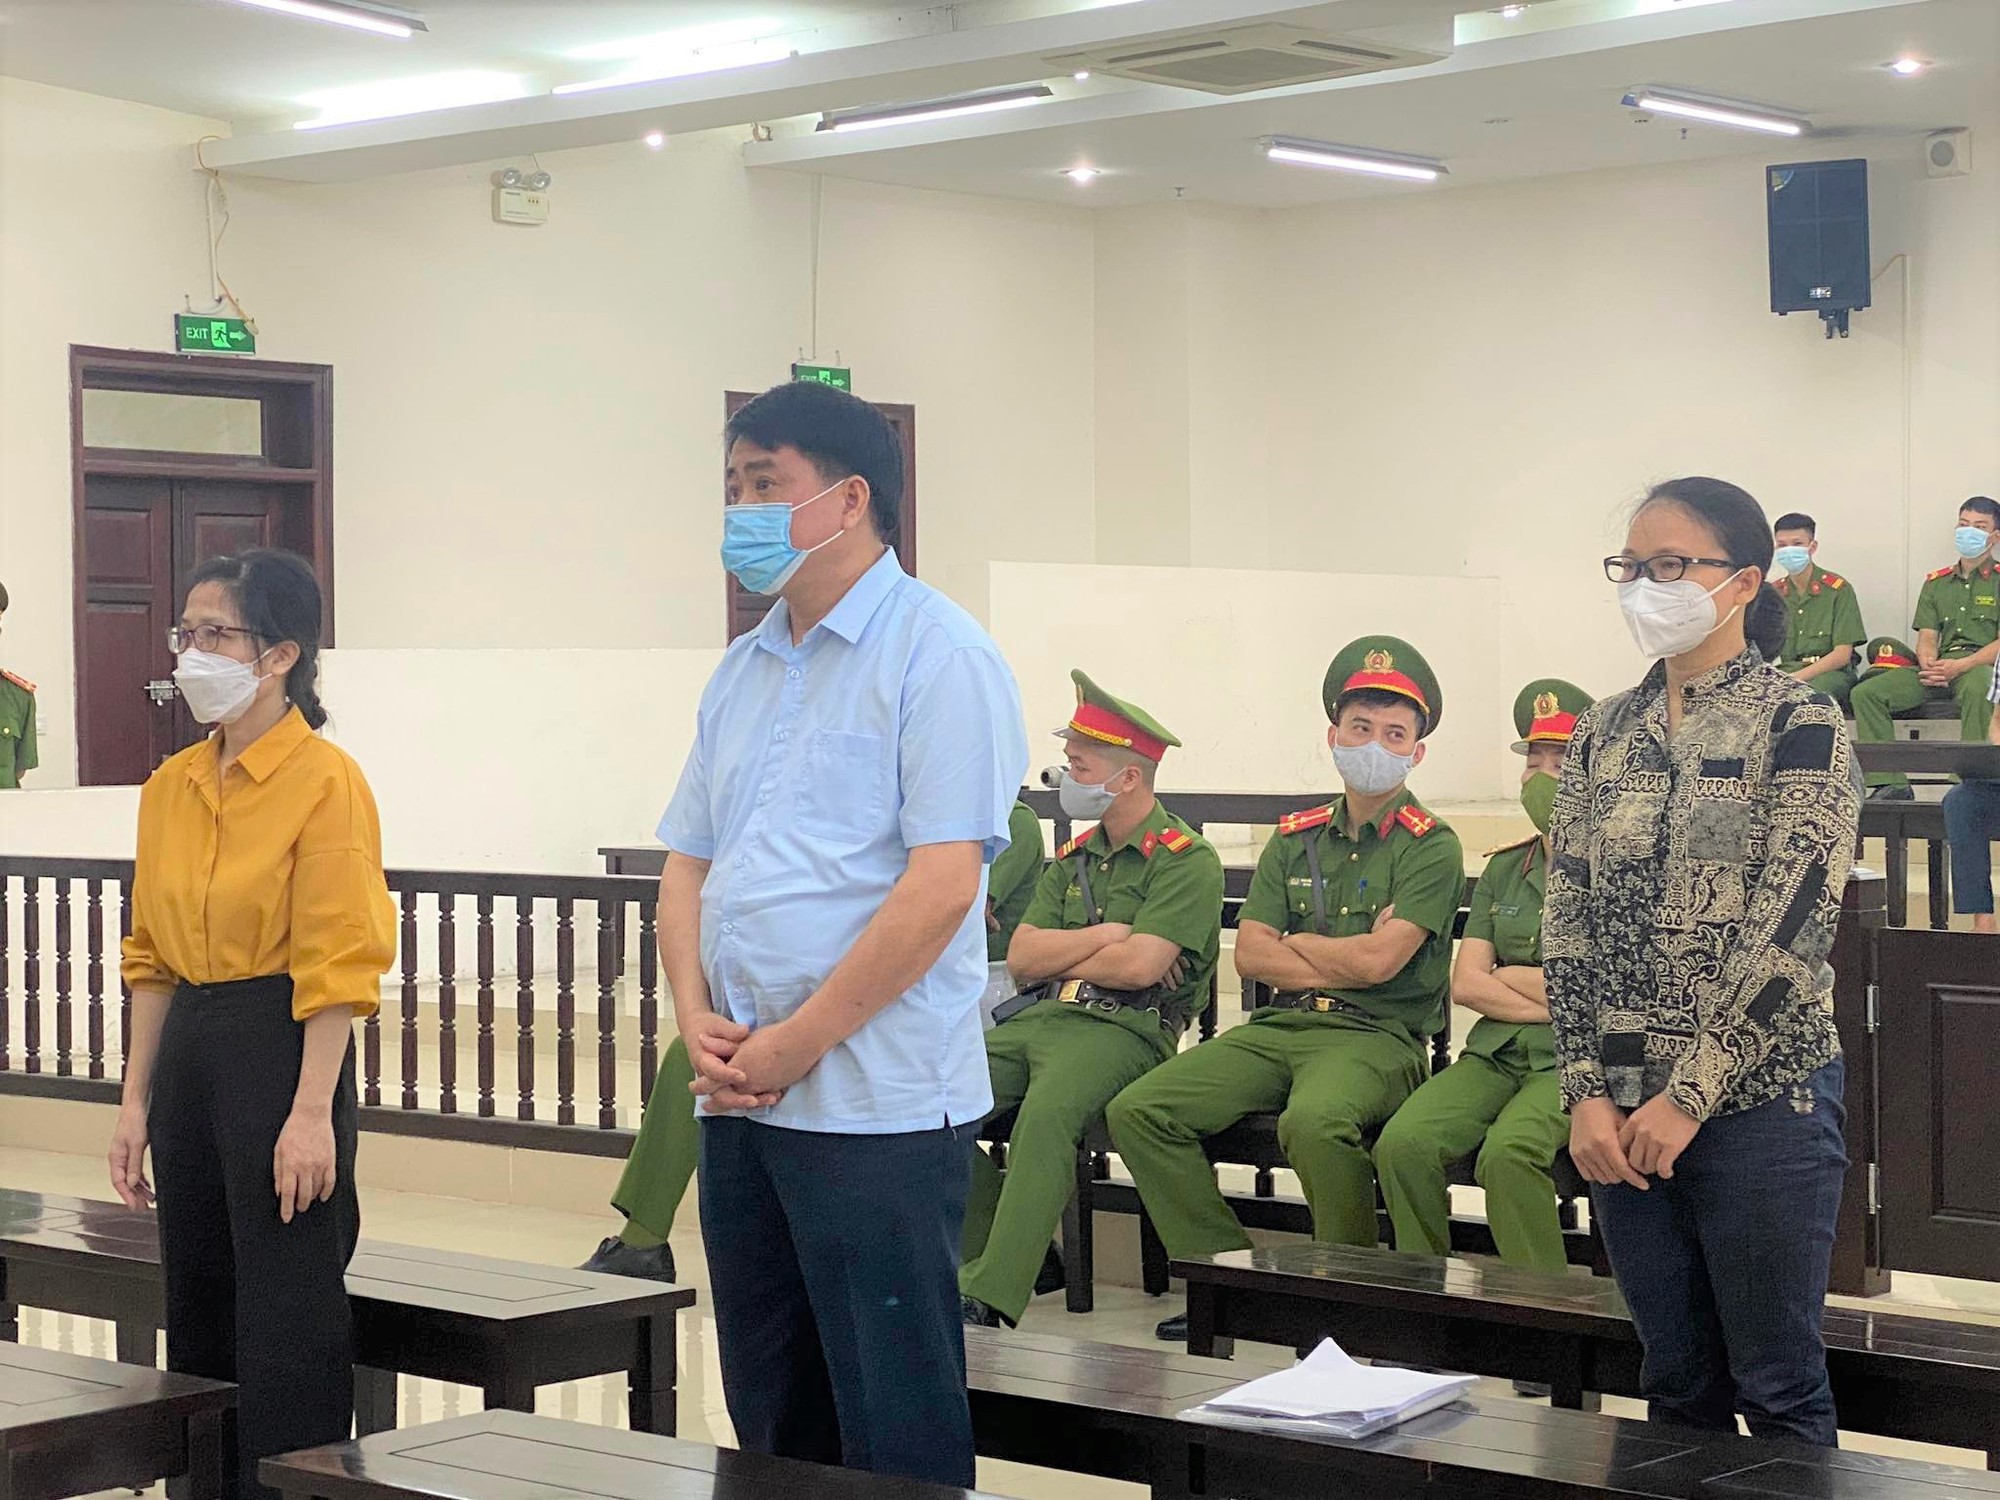 Tòa án đã nhận giấy khen của cựu Chủ tịch Hà Nội Nguyễn Đức Chung - Ảnh 1.